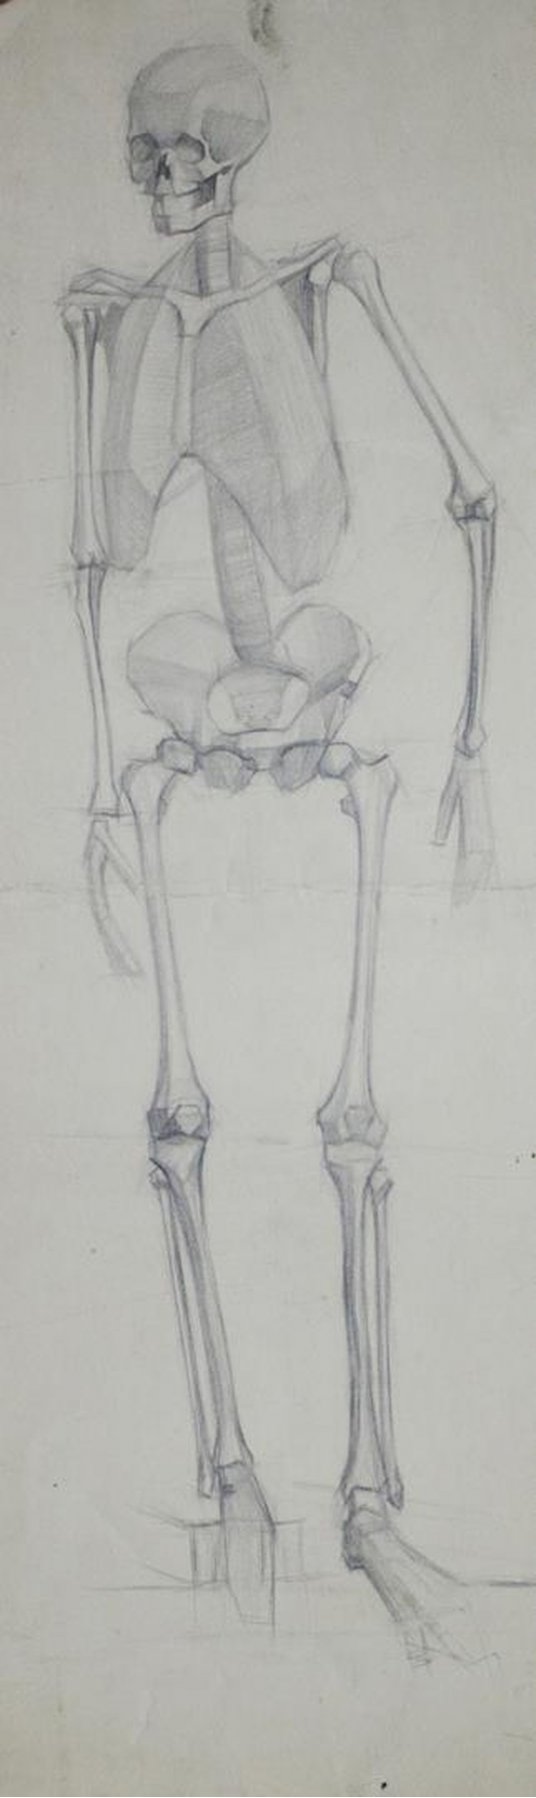 "Human skeleton"